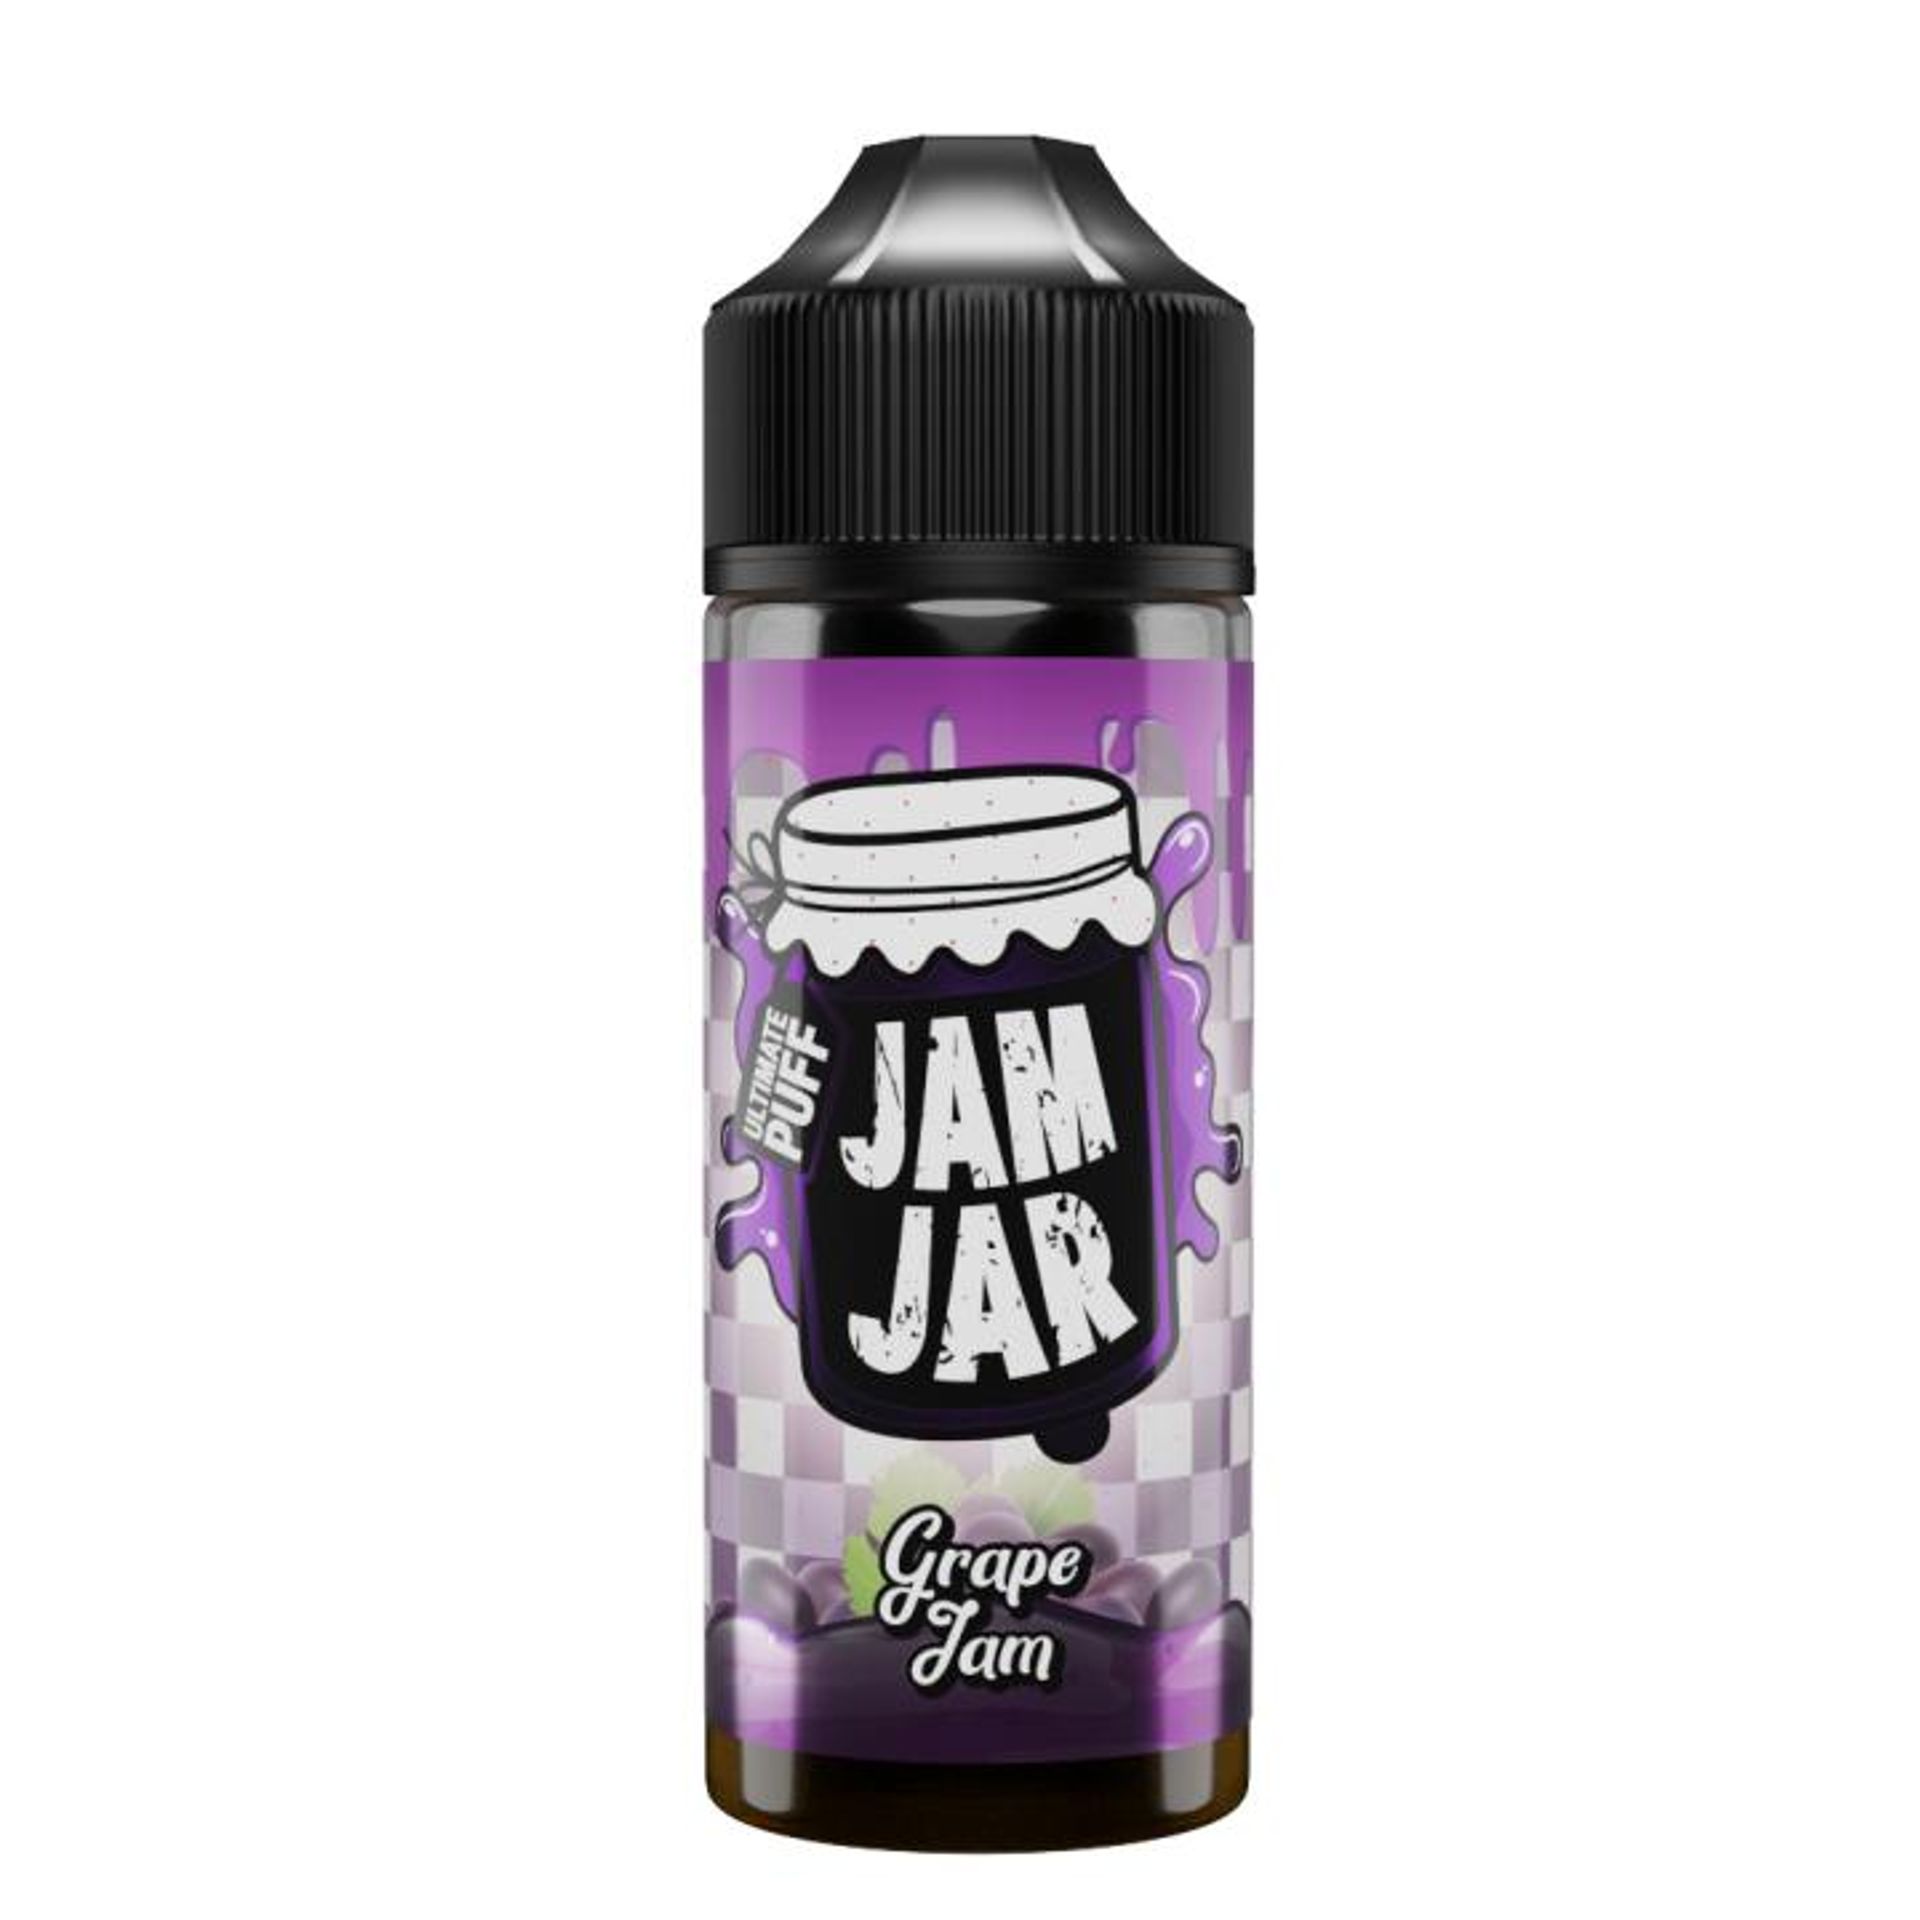 Image of Grape Jam by Jam Jar